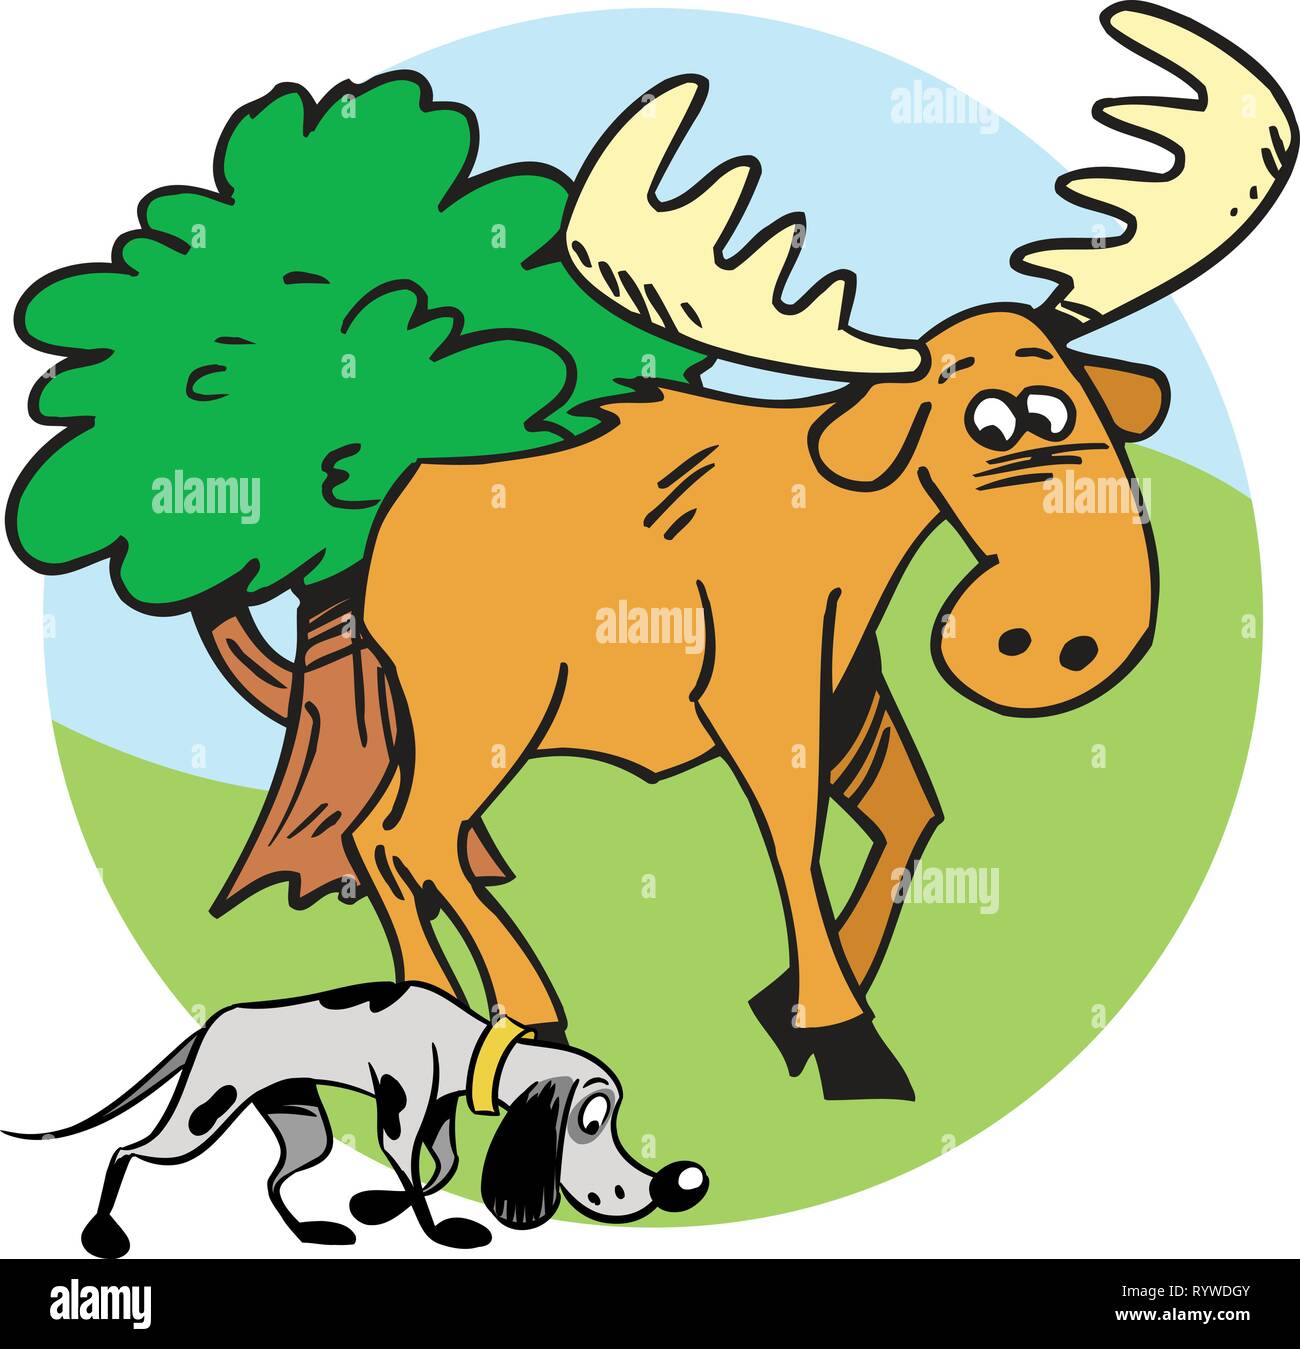 Die Abbildung zeigt die Elche Jagd und Hund. Abbildung im Comic-stil auf separaten Ebenen getan. Stock Vektor